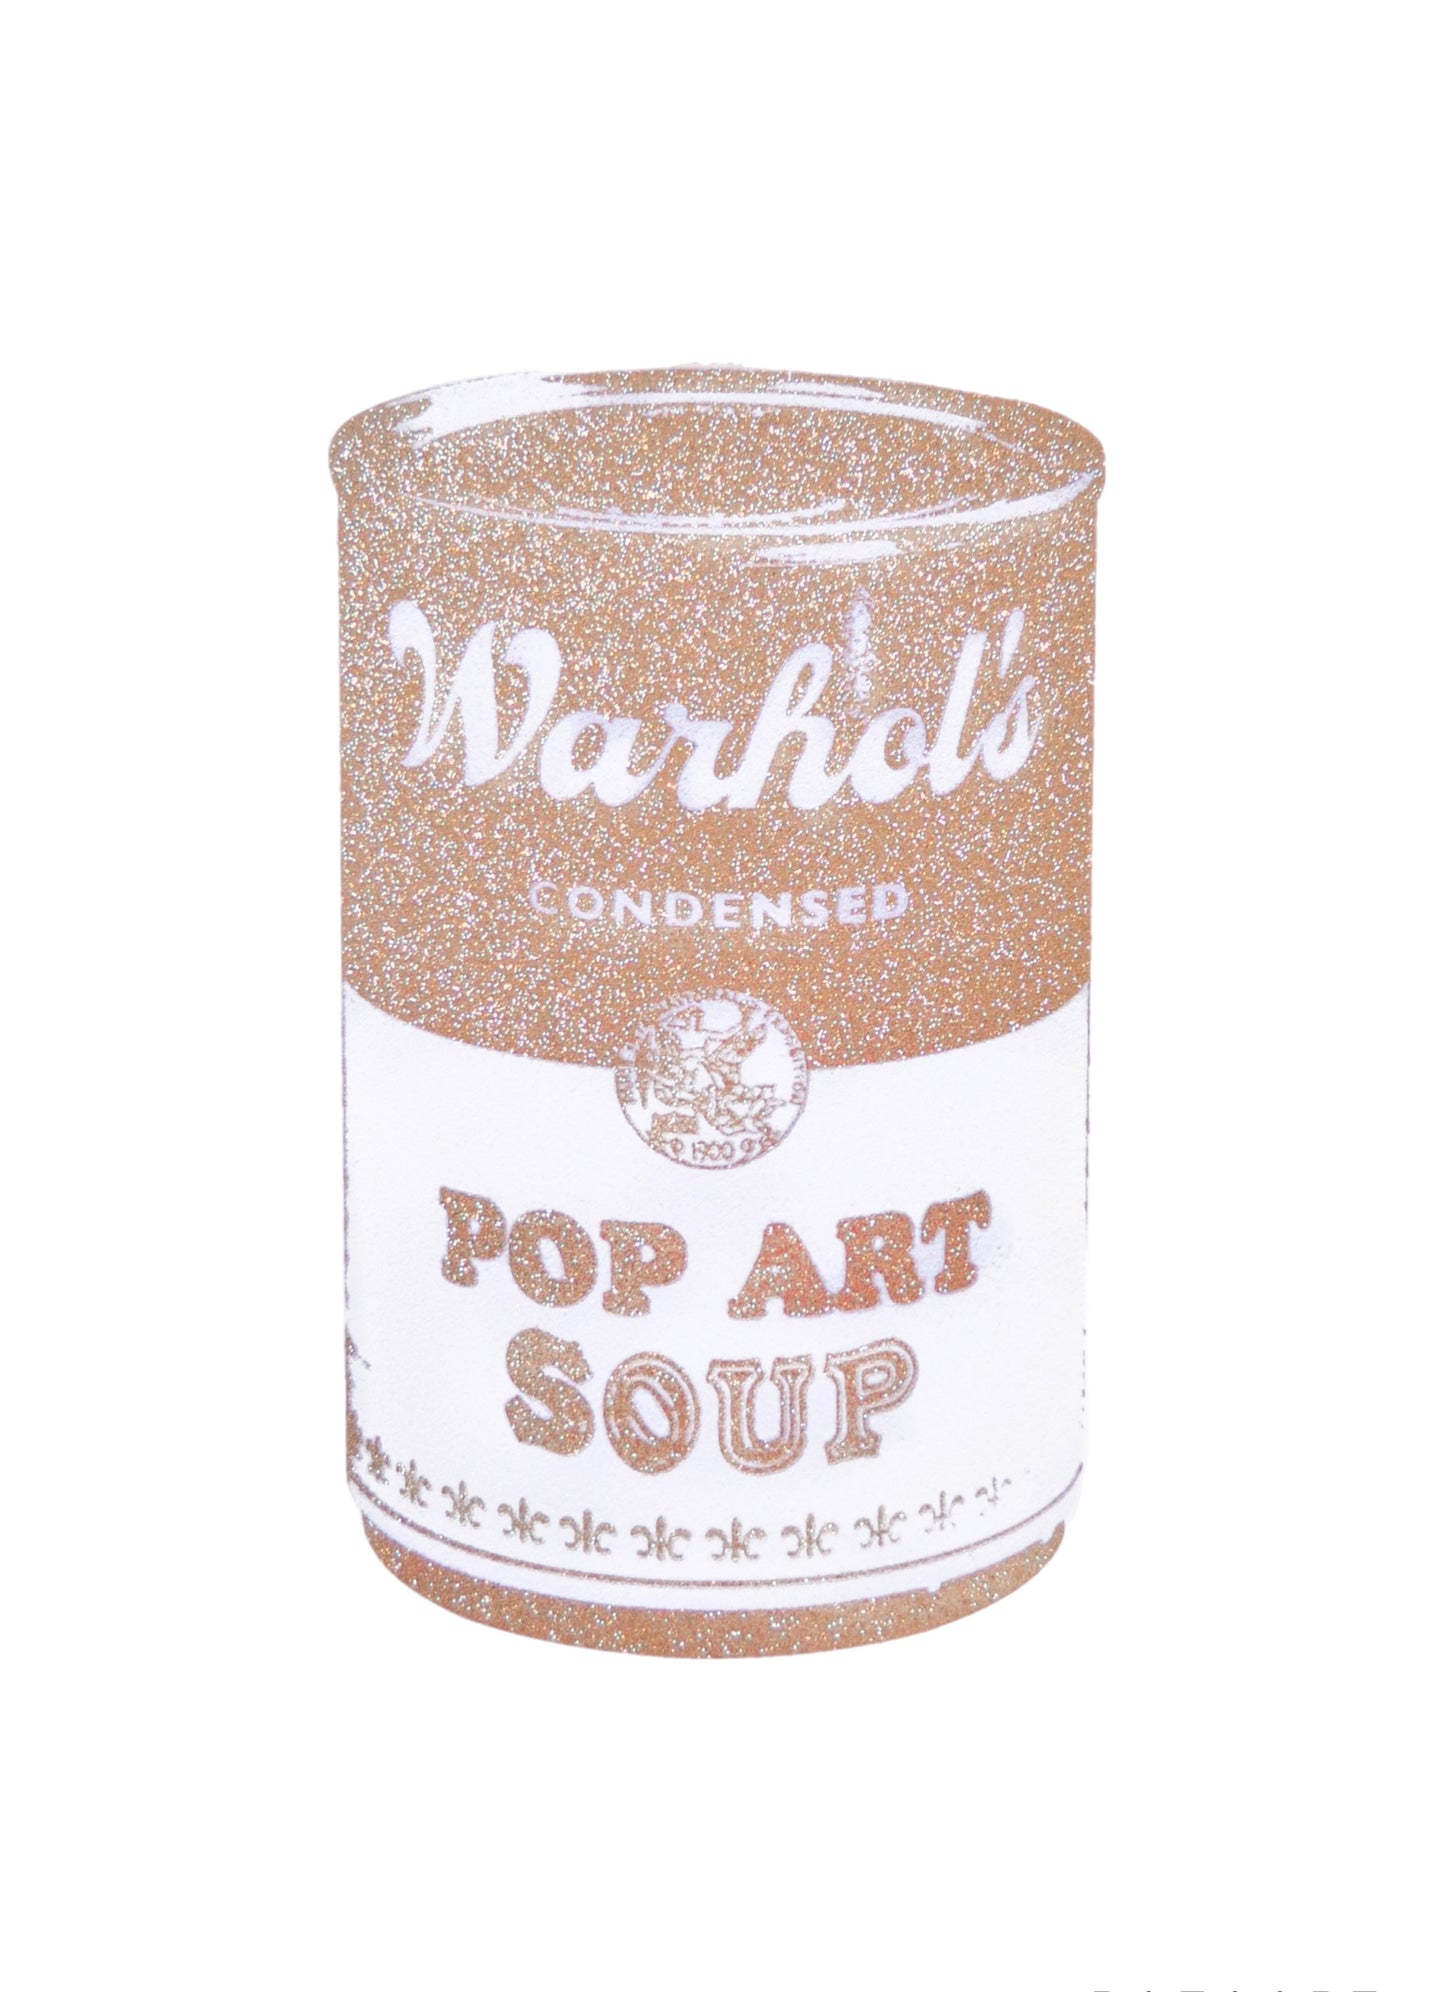 Pop Art Soup, 2013, Gold